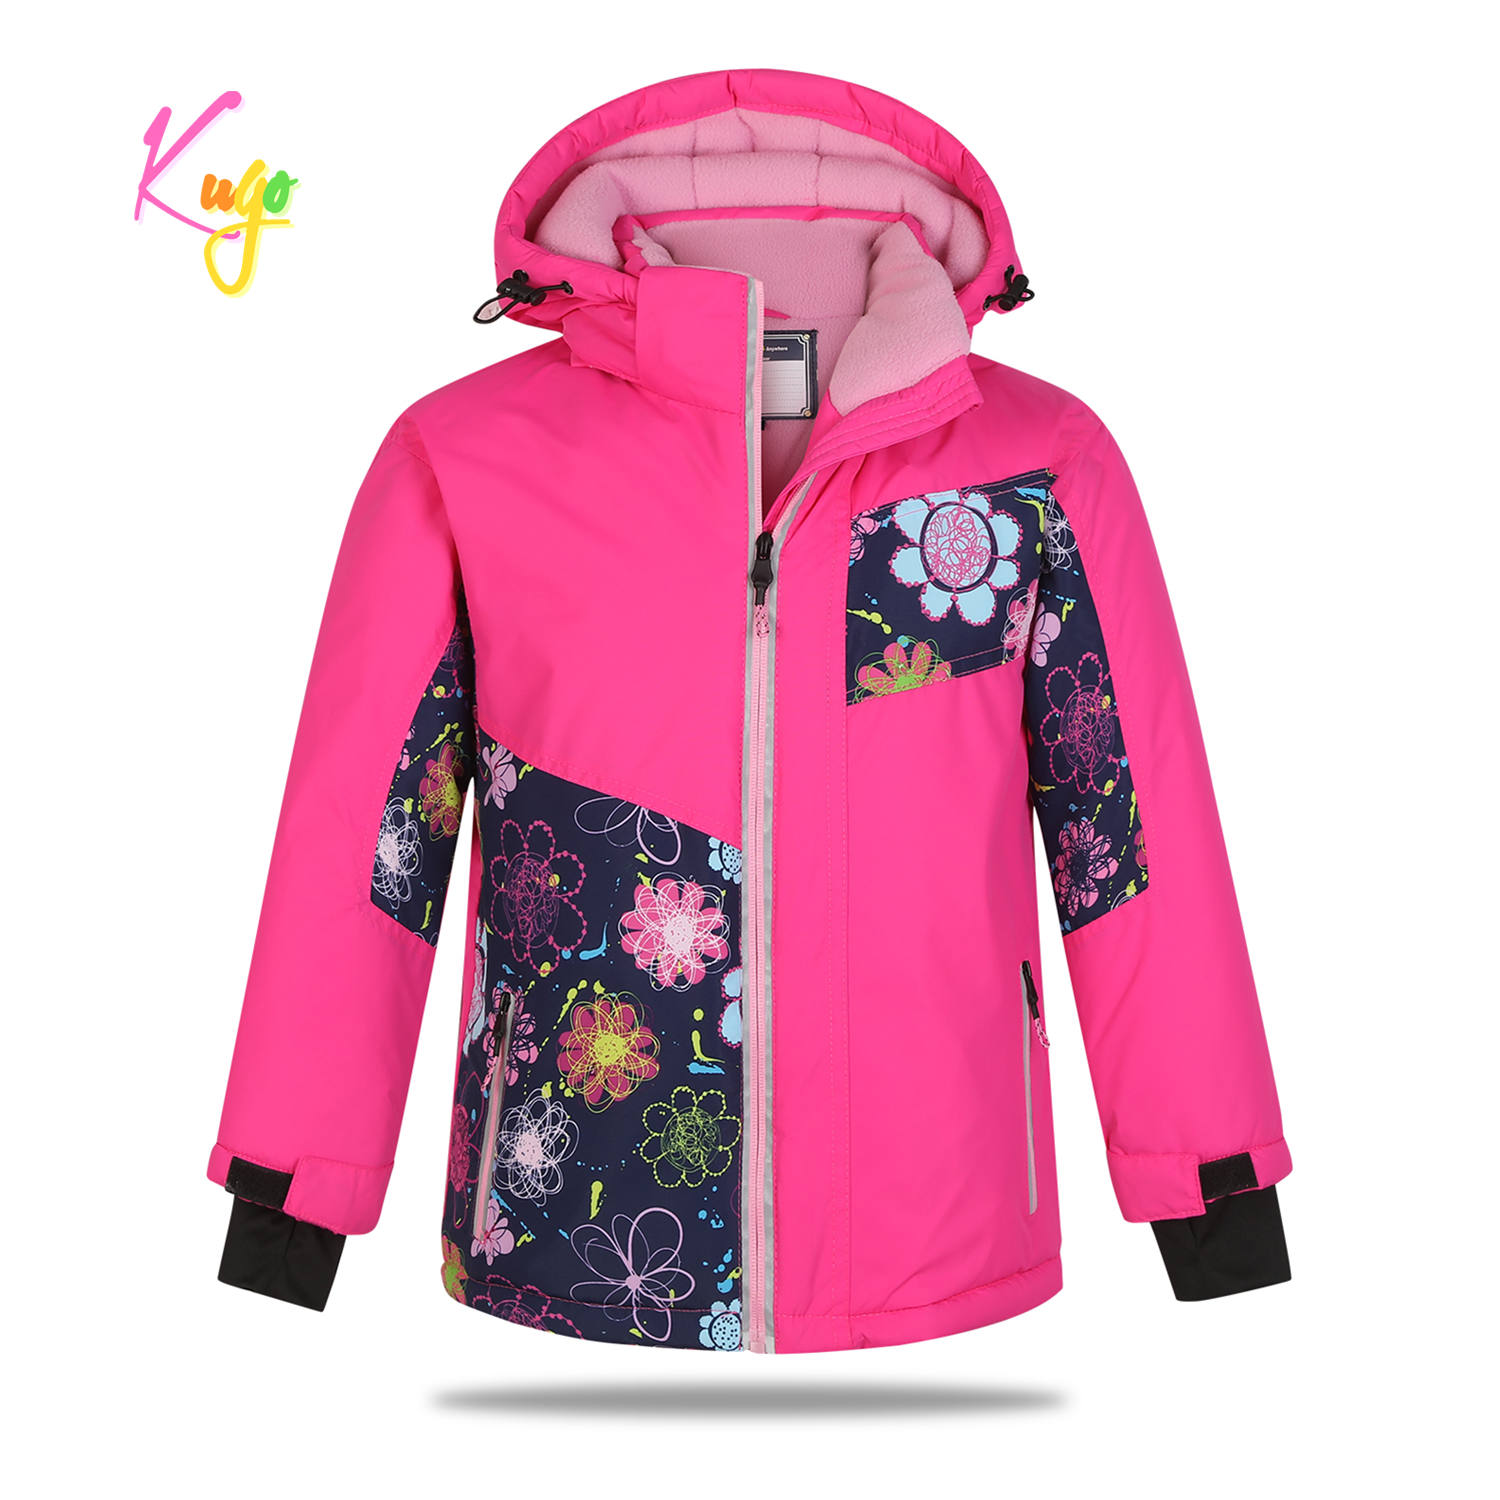 Dívčí zimní bunda - KUGO PB3889, růžová Barva: Růžová, Velikost: 104